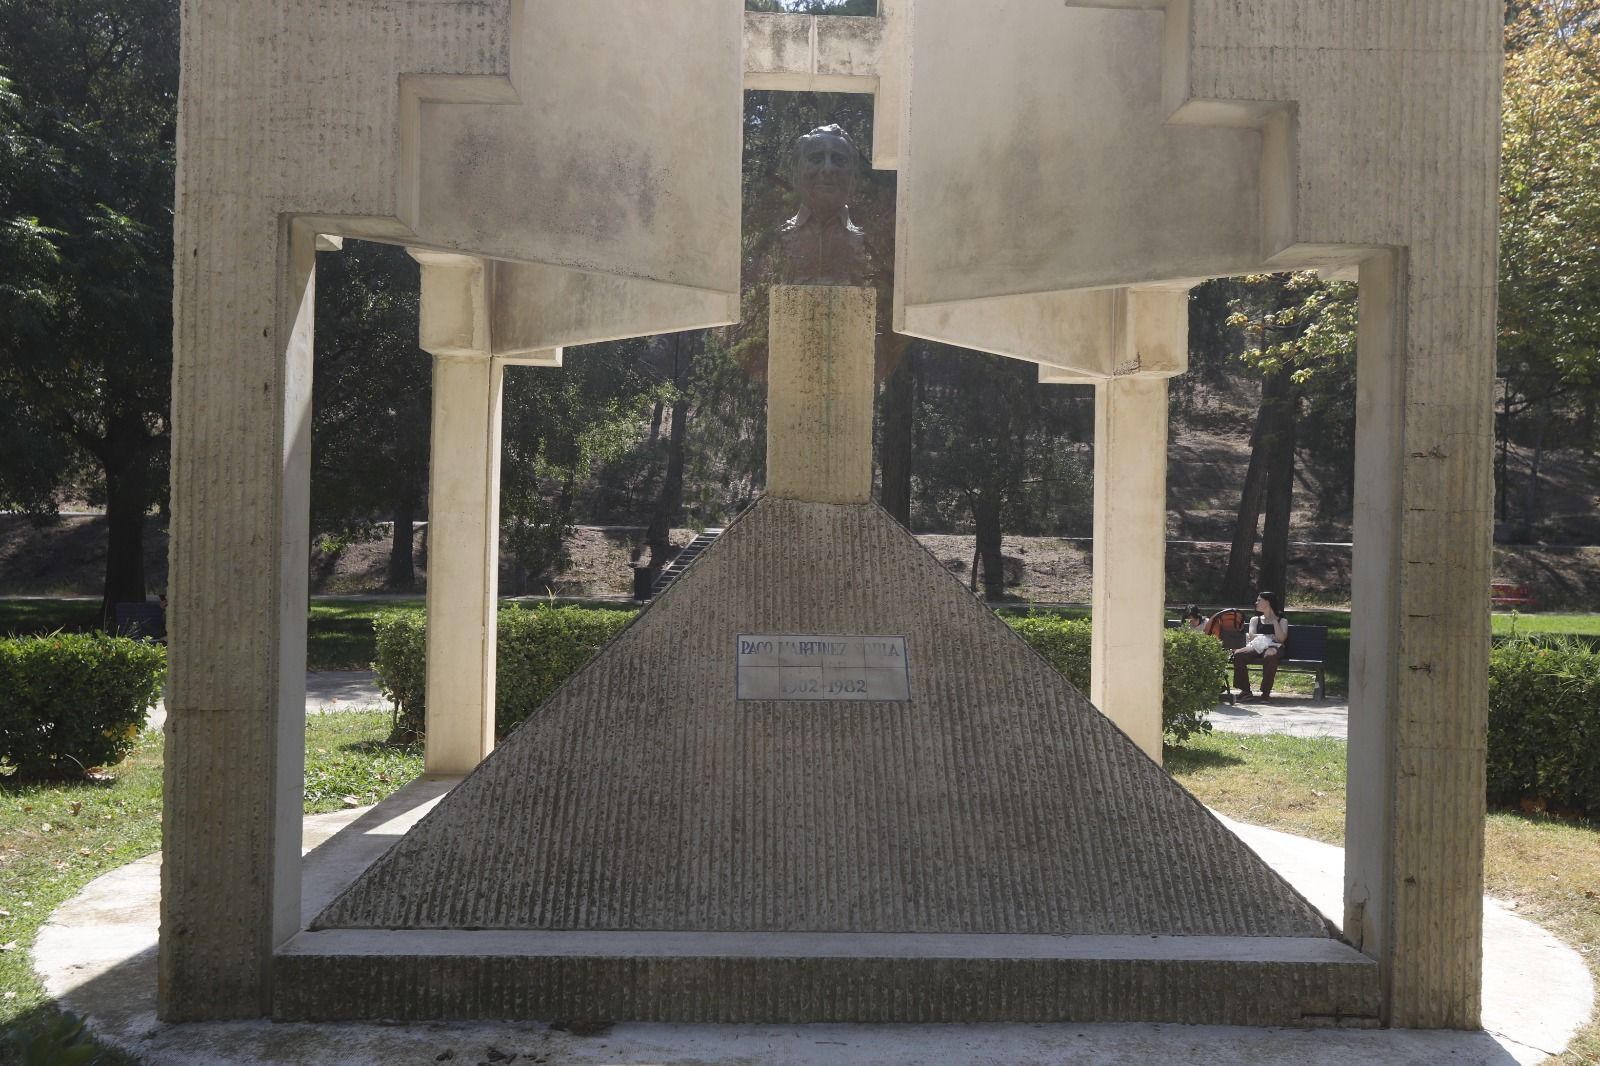 Este es el estado de los monumentos del Parque Grande José Antonio Labordeta de Zaragoza